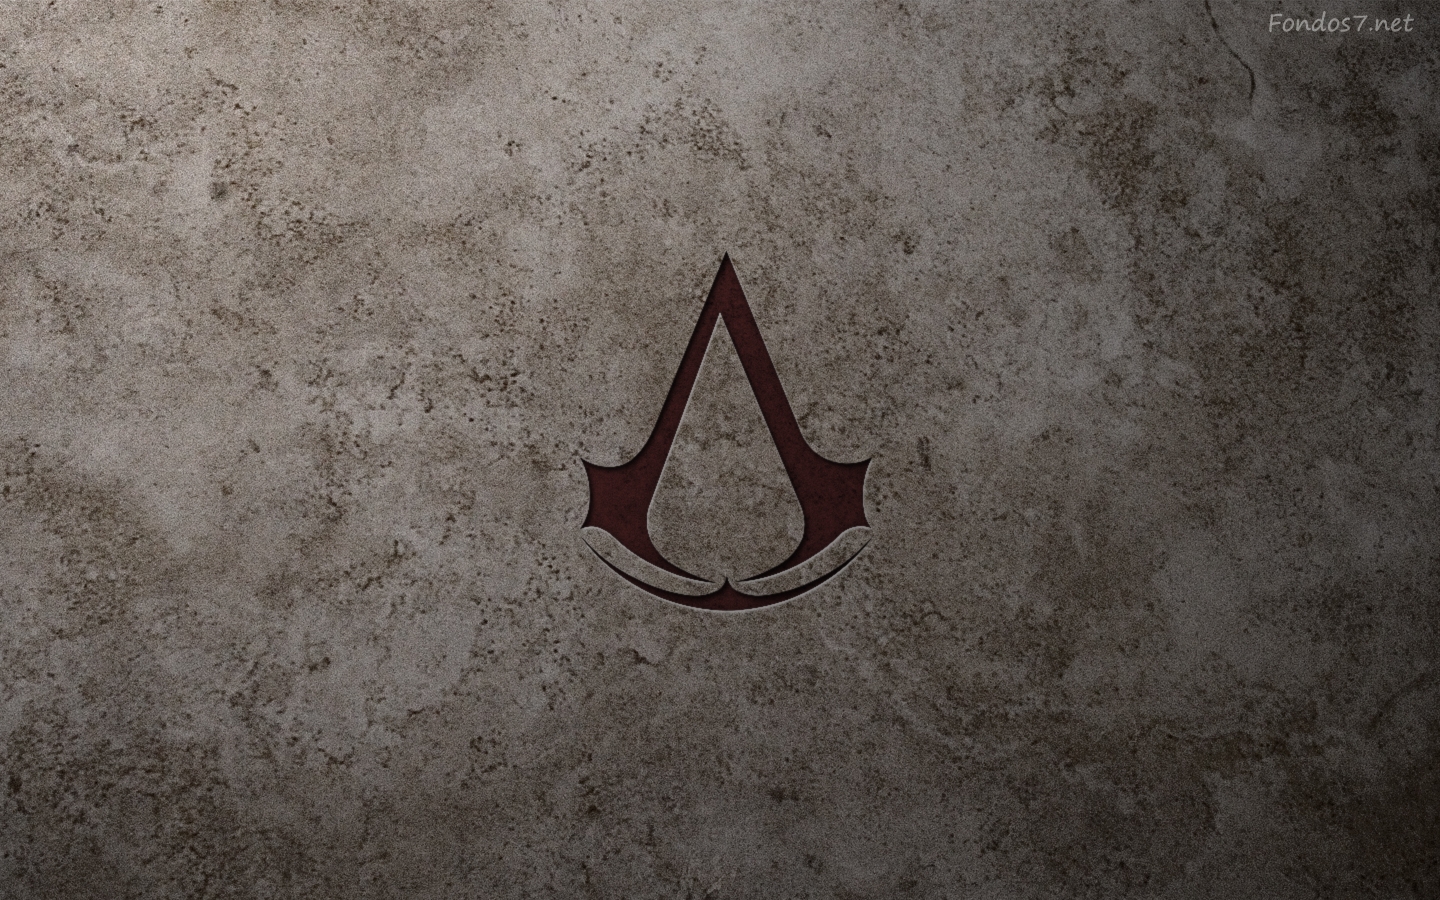  logo hd widescreen Gratis Assassins Creed Logo Wallpaper Iphone 1440x900